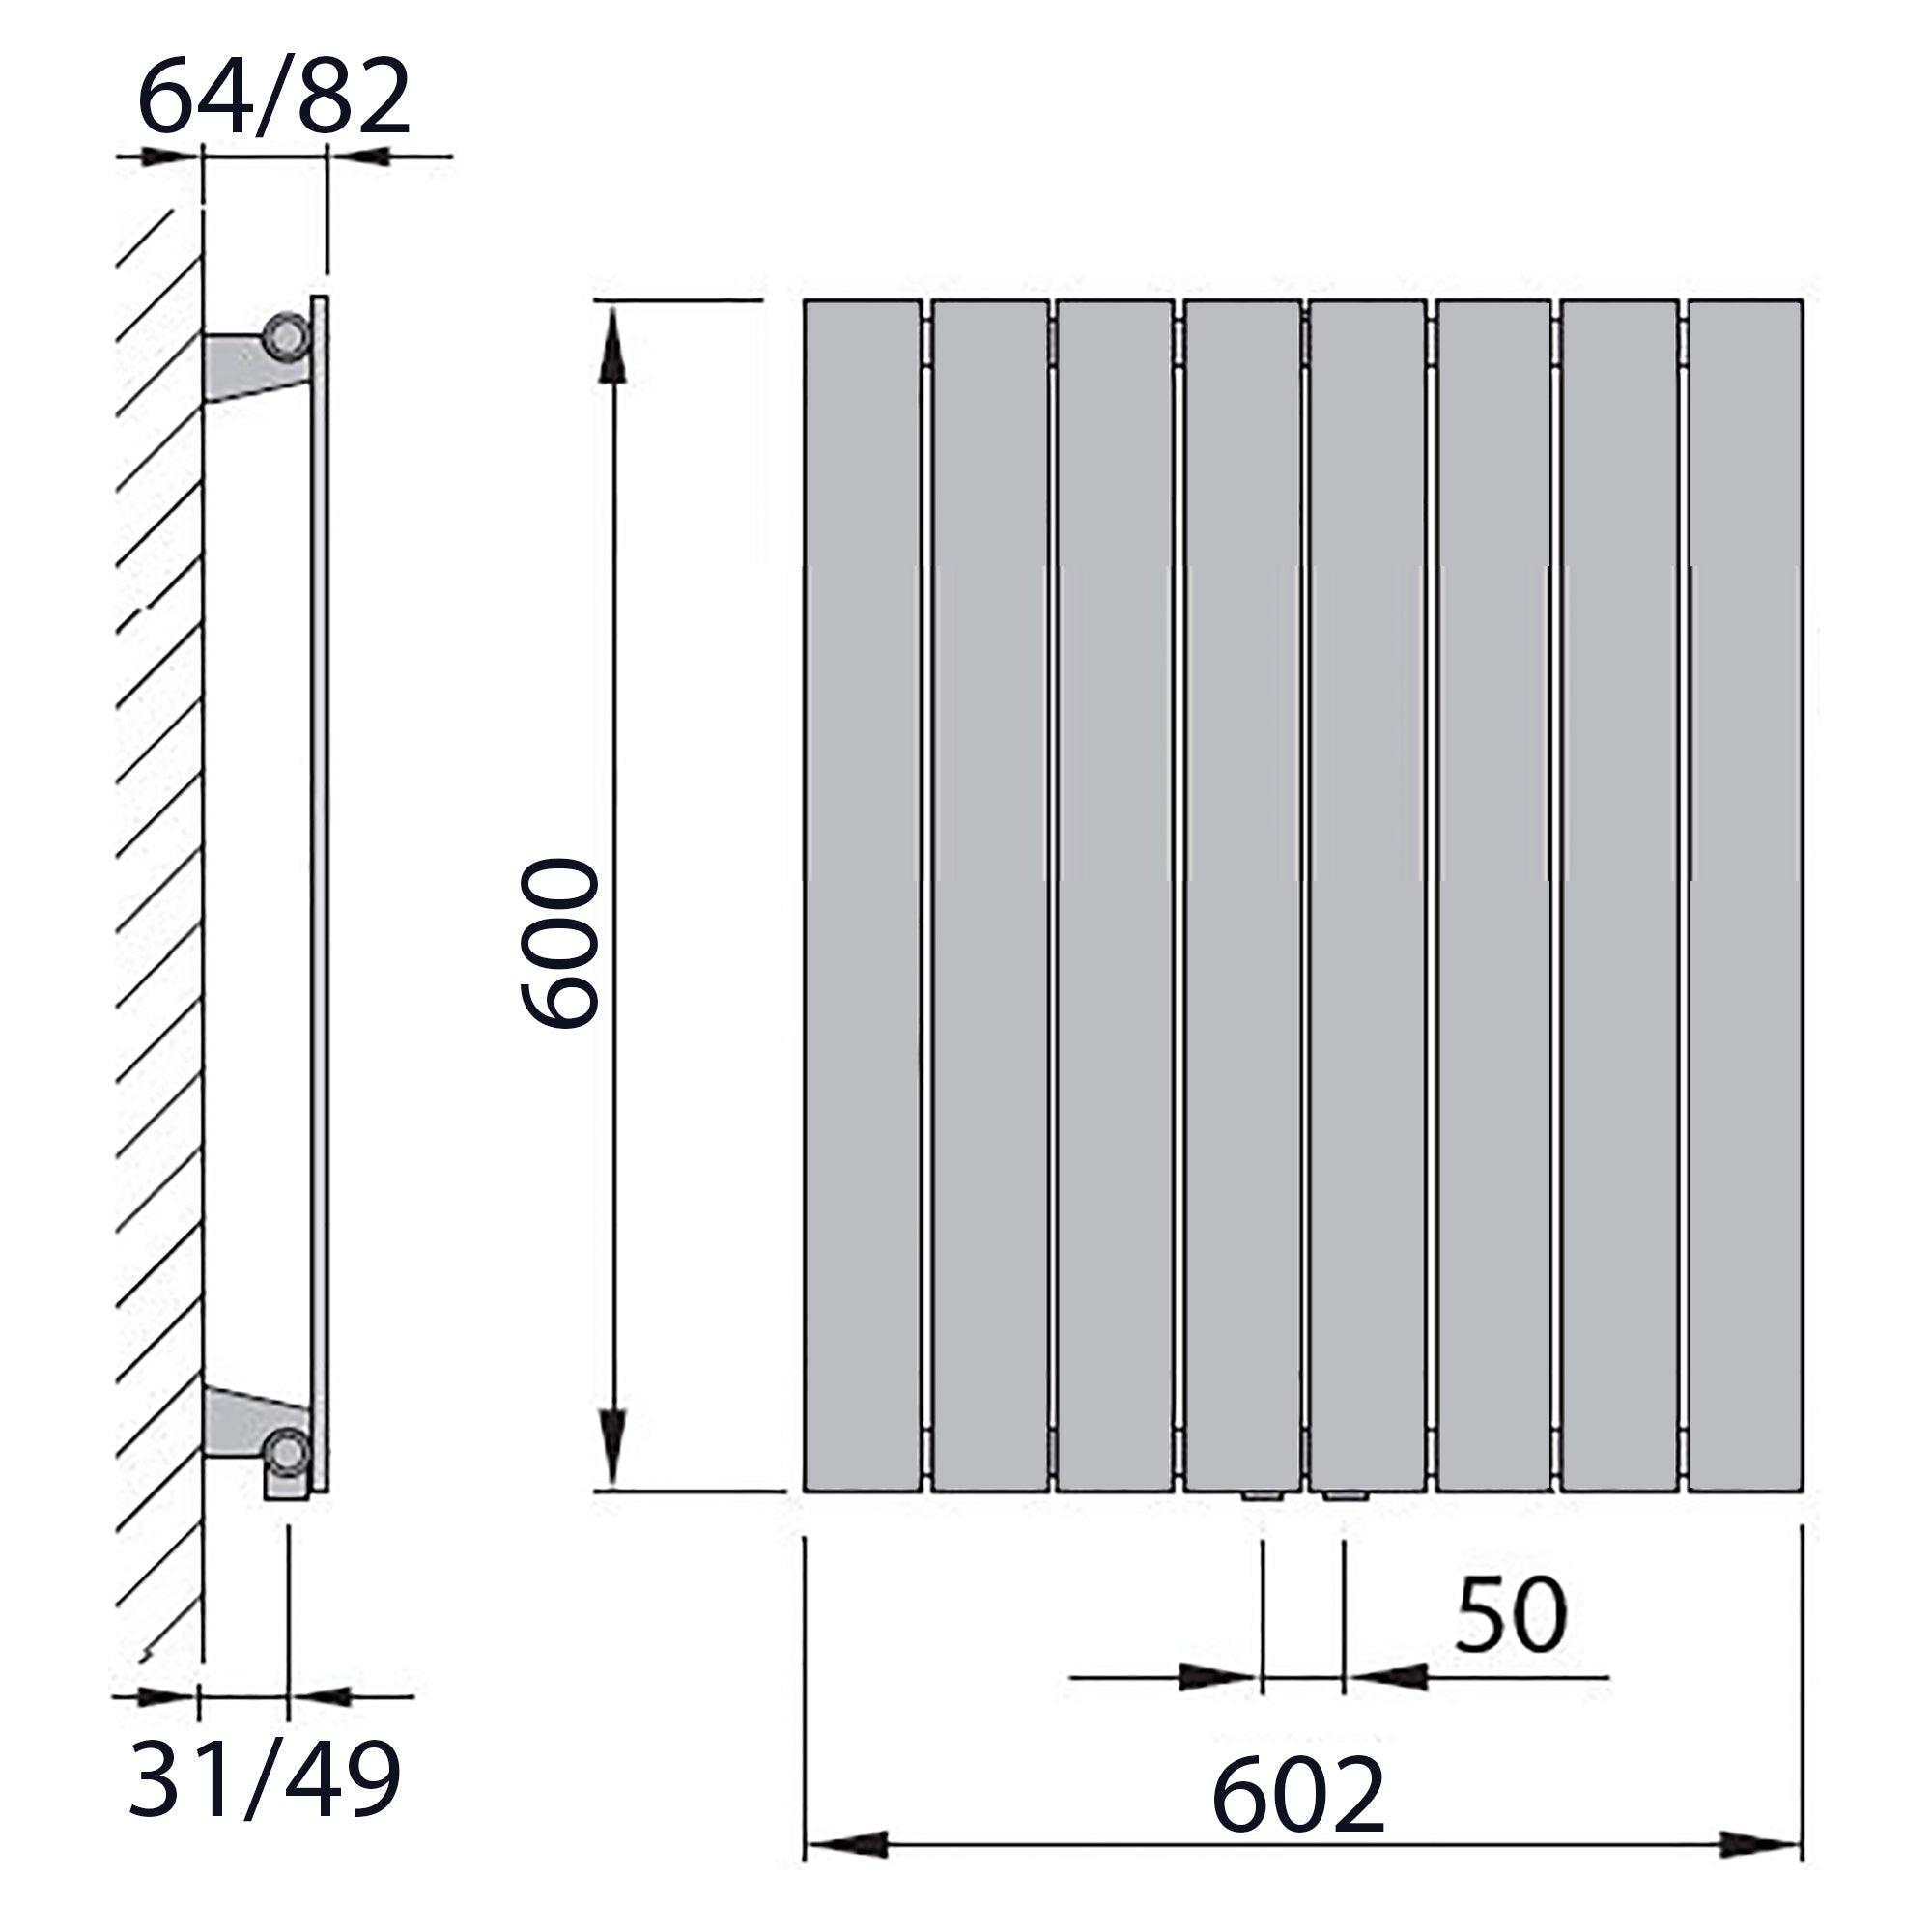 Design Paneelheizkörper vertikal 600 x 602 anthrazit Heizkörper Badheizkörper flach Badezimmer Heizung technische Zeichnung - heizkoerper.shop